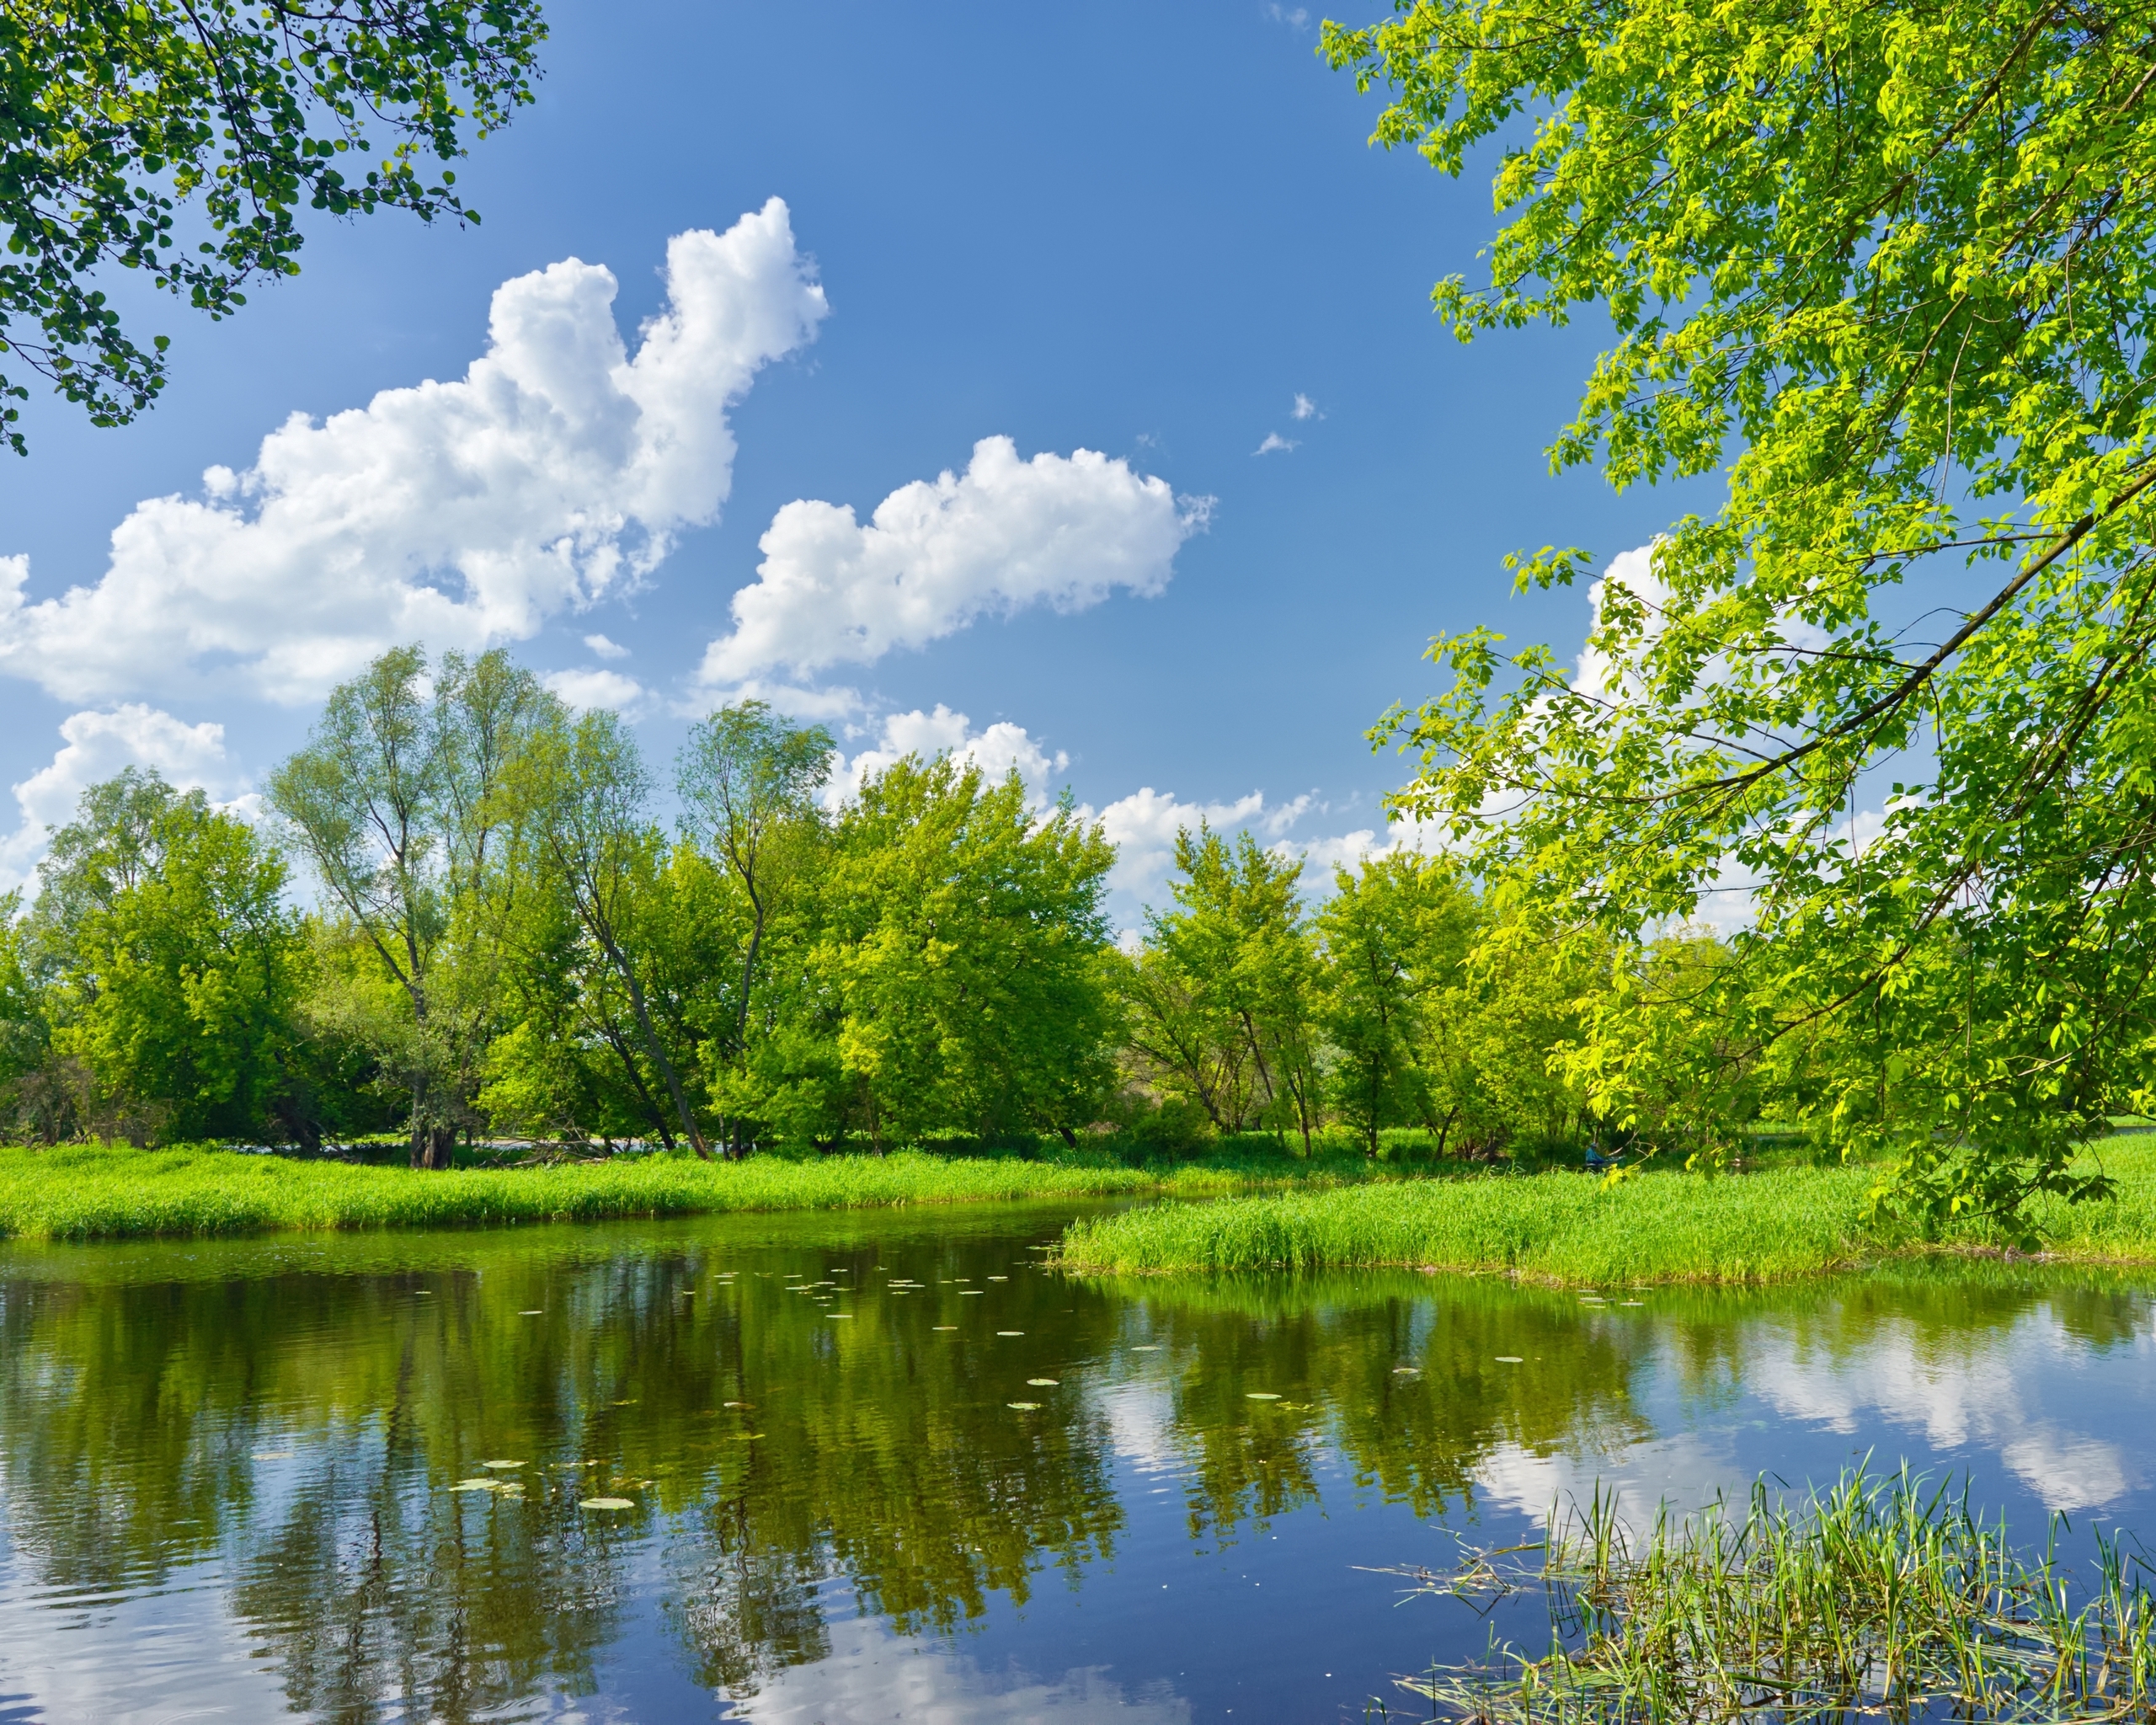 Картинка: Река, лето, пейзаж, вода, отражение, деревья, облака